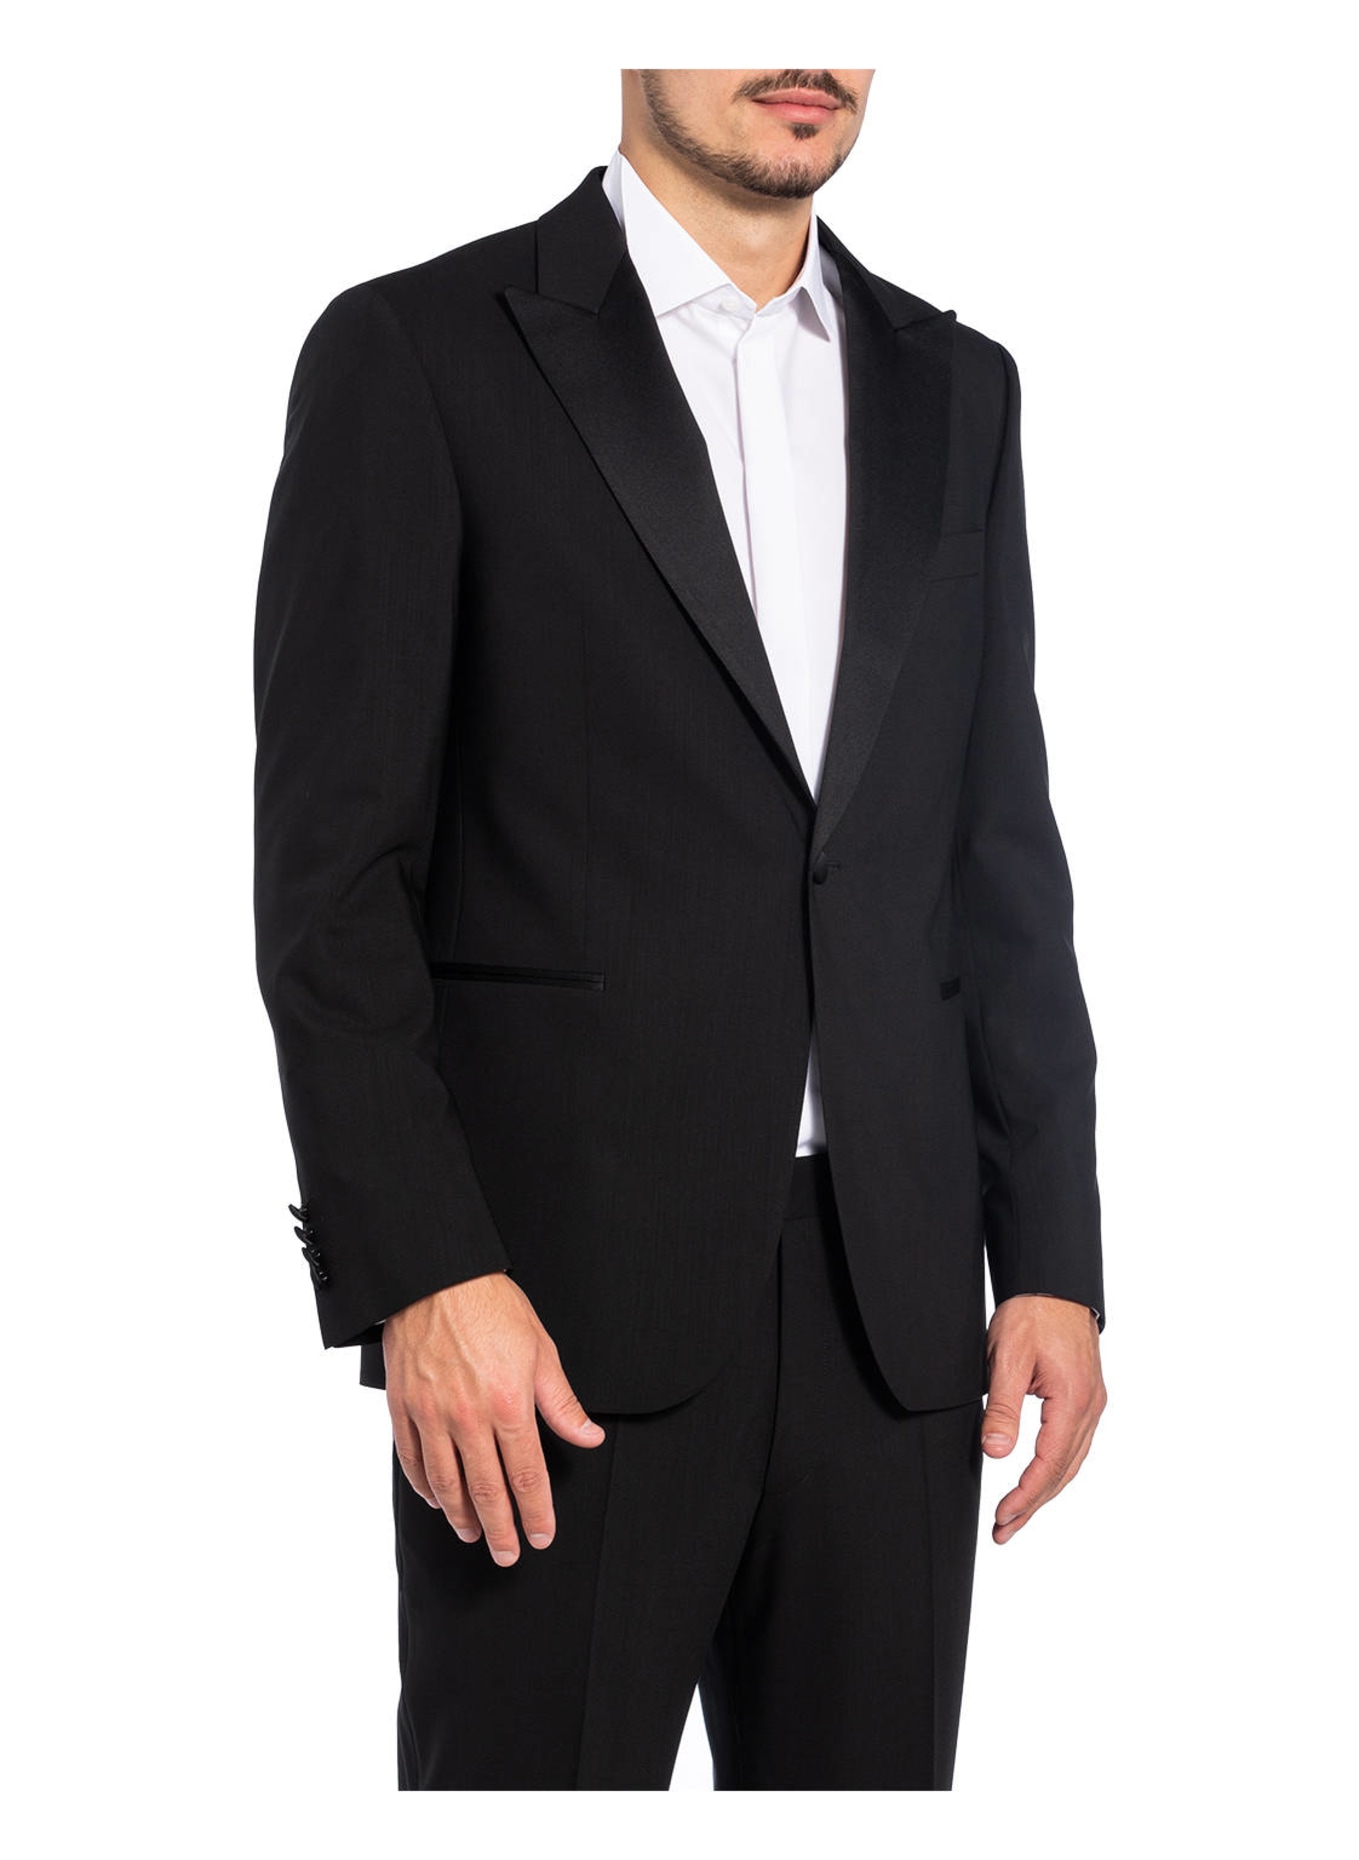 EDUARD DRESSLER Tuxedo jacket regular fit , Color: BLACK (Image 3)